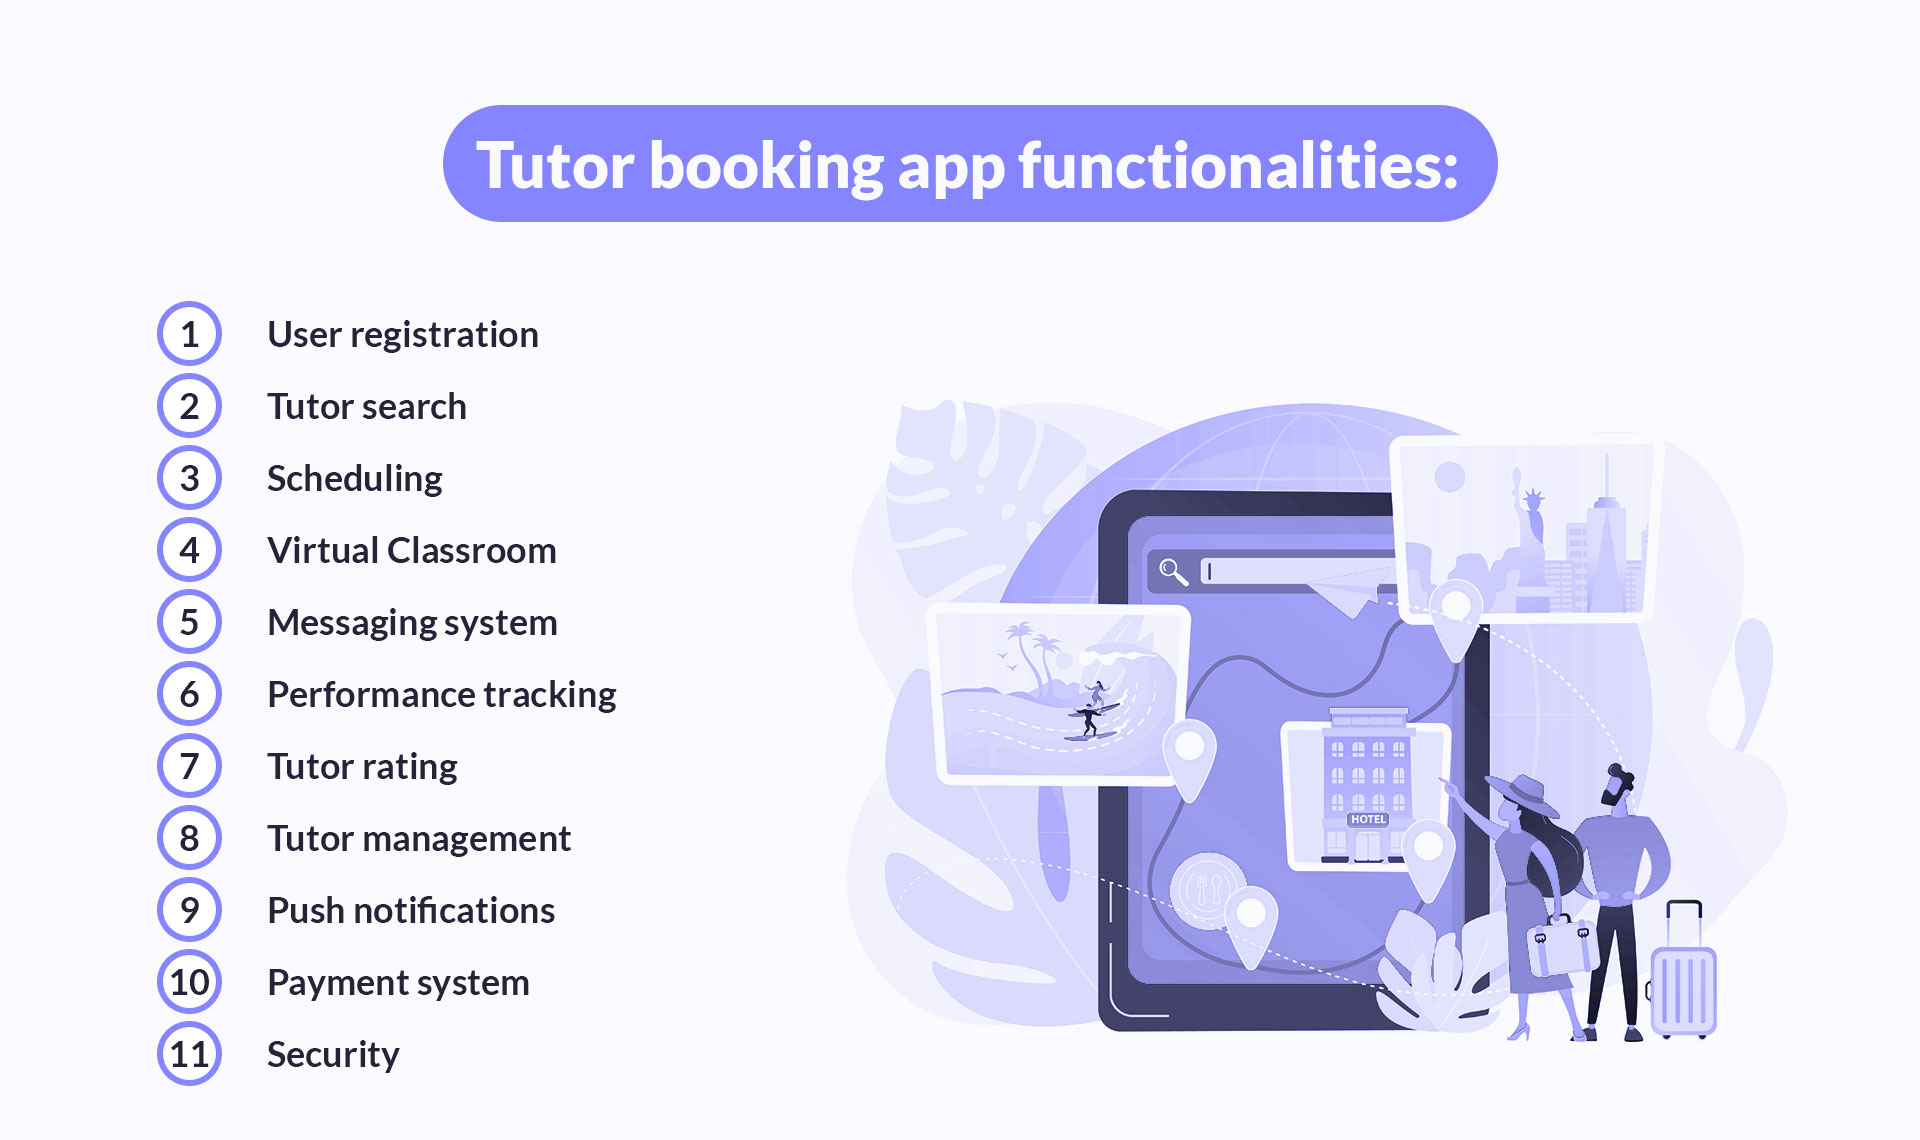 Tutor booking app functionalities